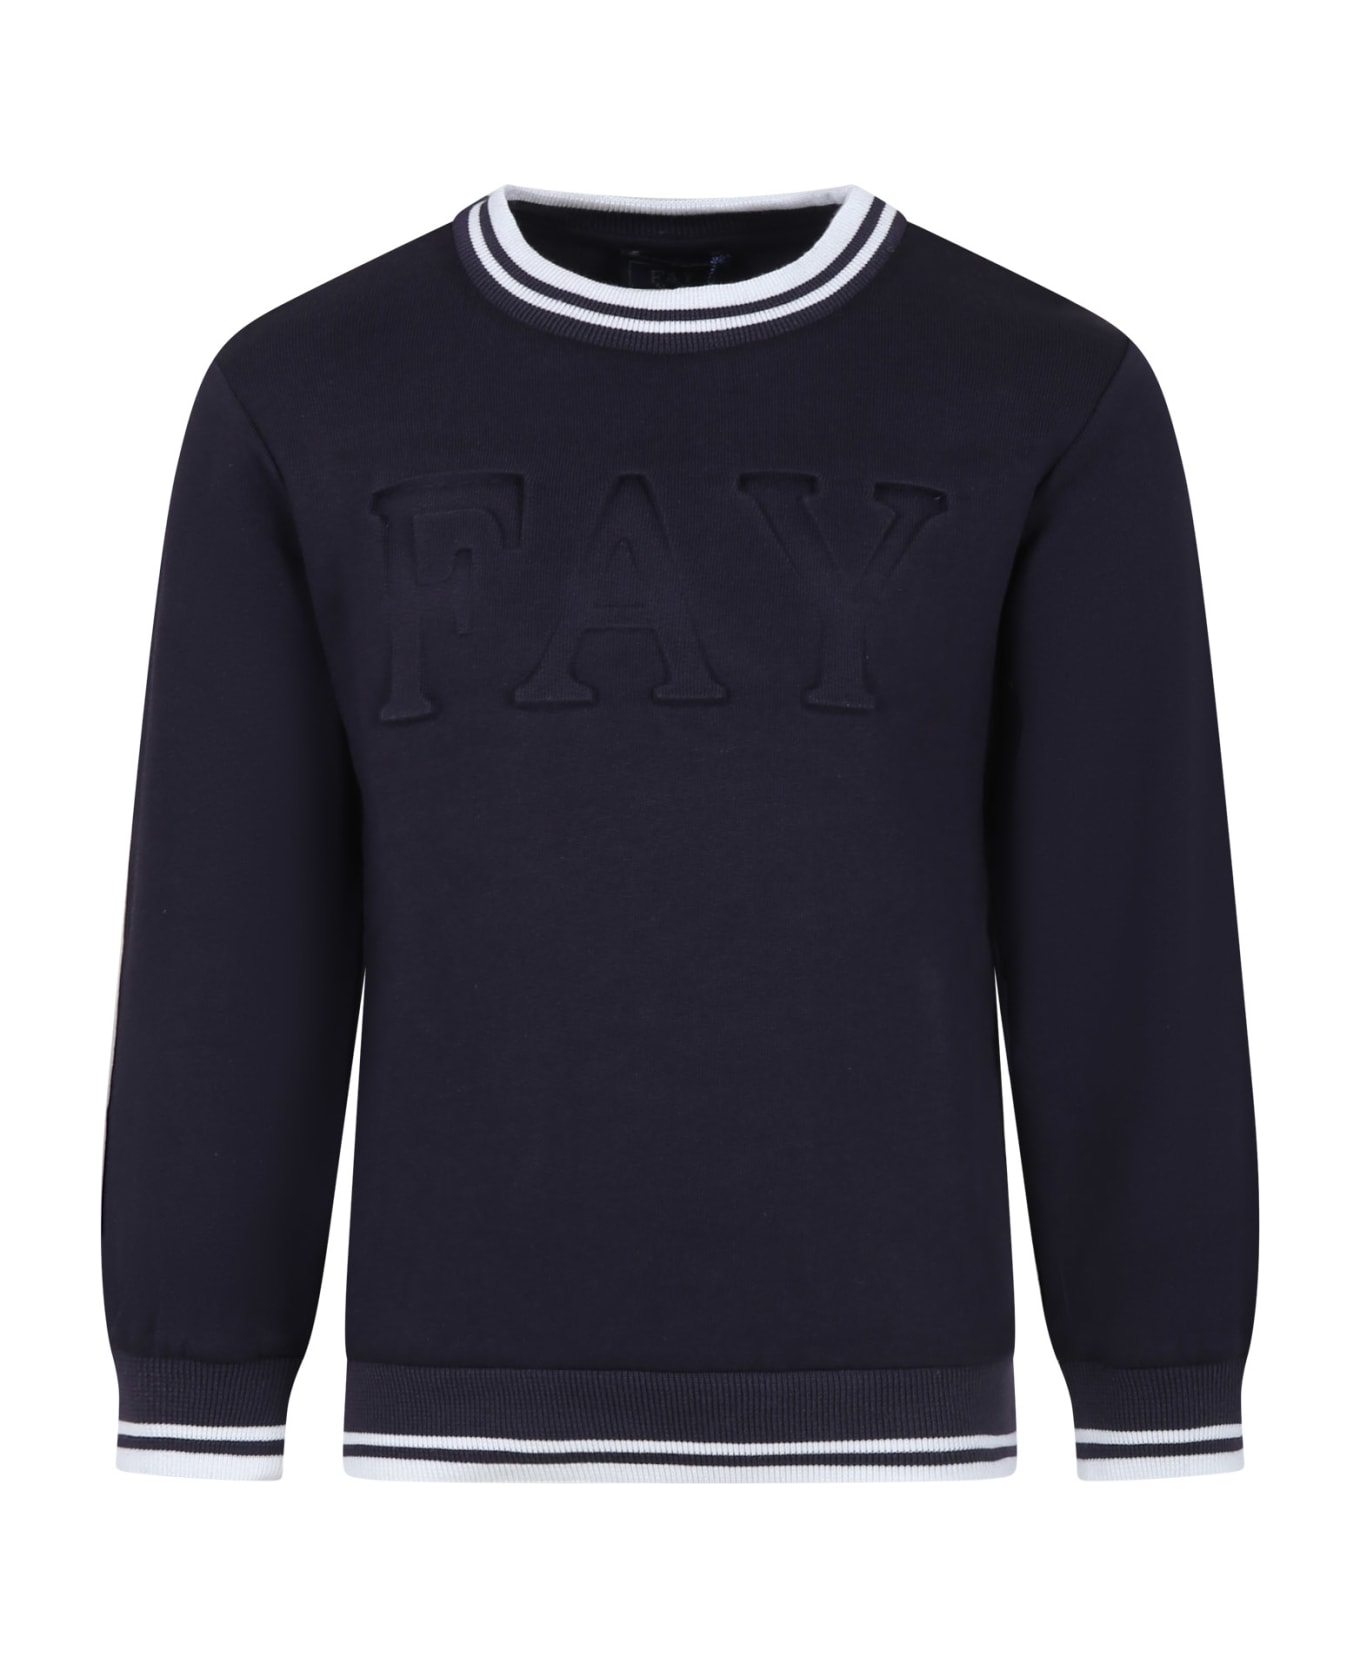 Fay Blue Sweatshirt For Boy With Logo - Blue